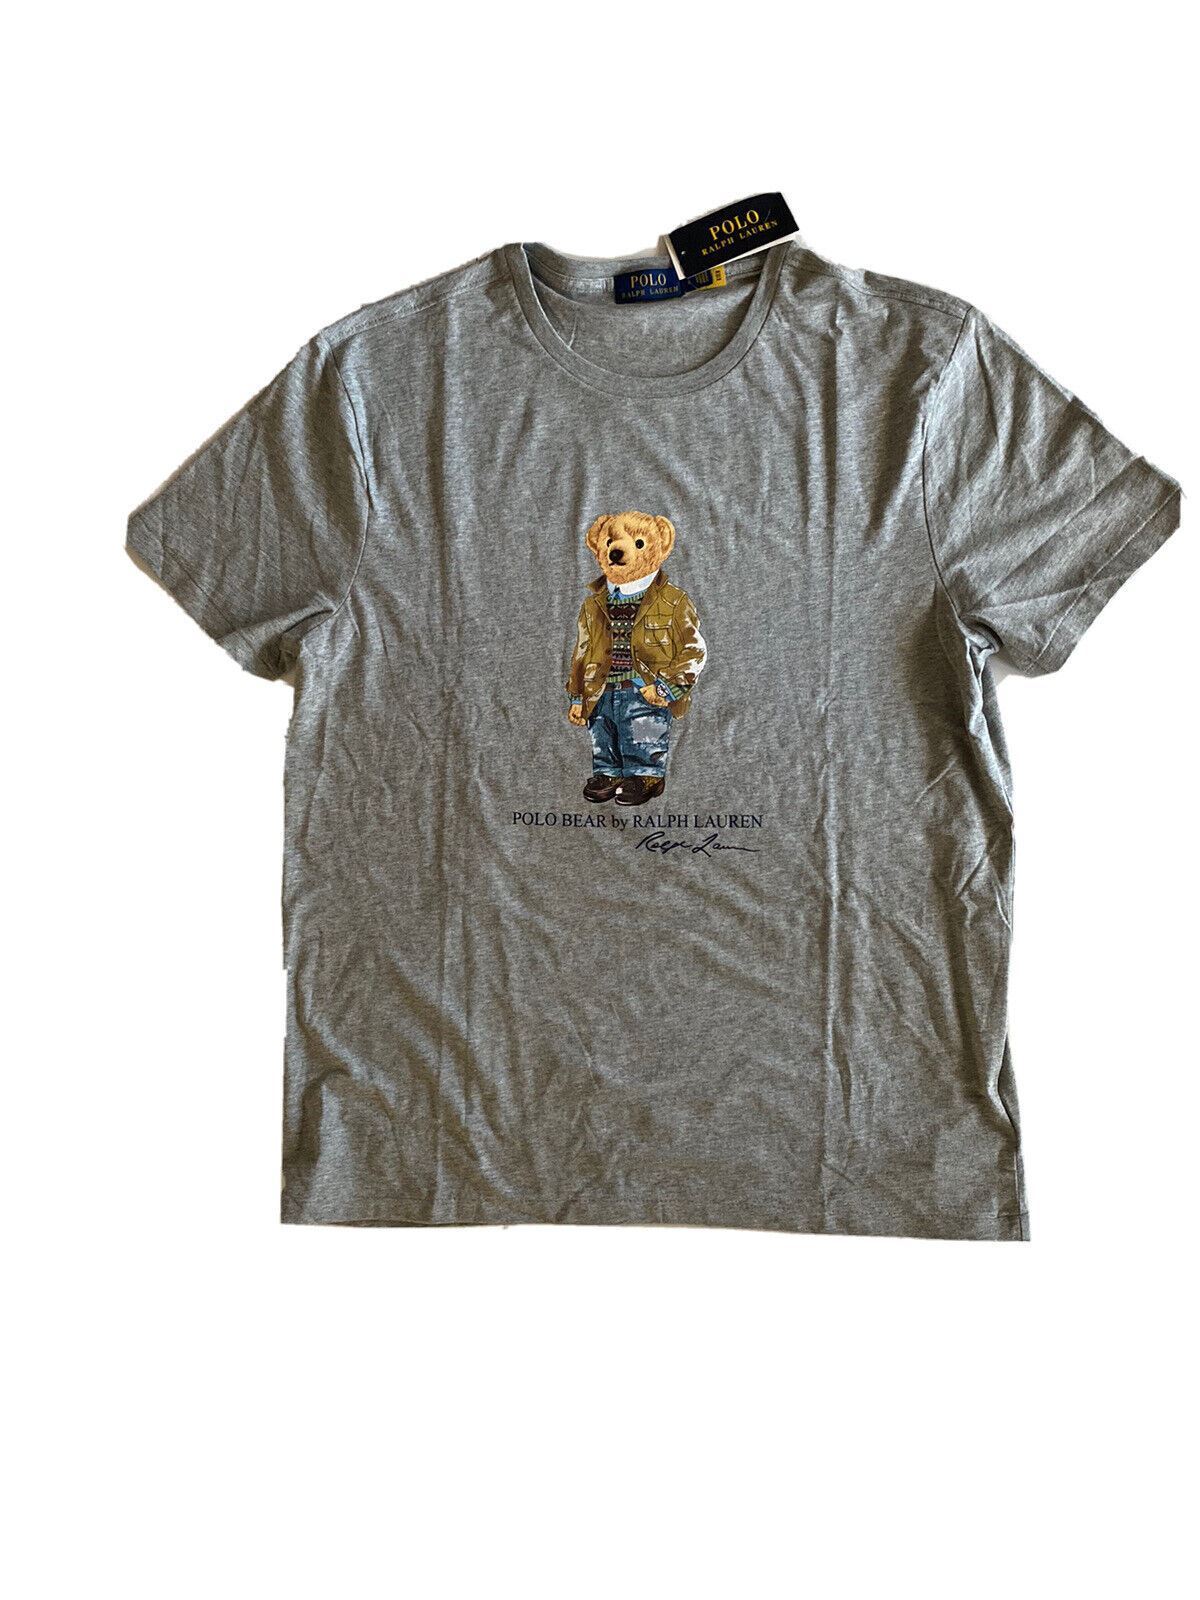 Neu mit Etikett: 65 $ Polo Ralph Lauren Bear T-Shirt Grau 2XL